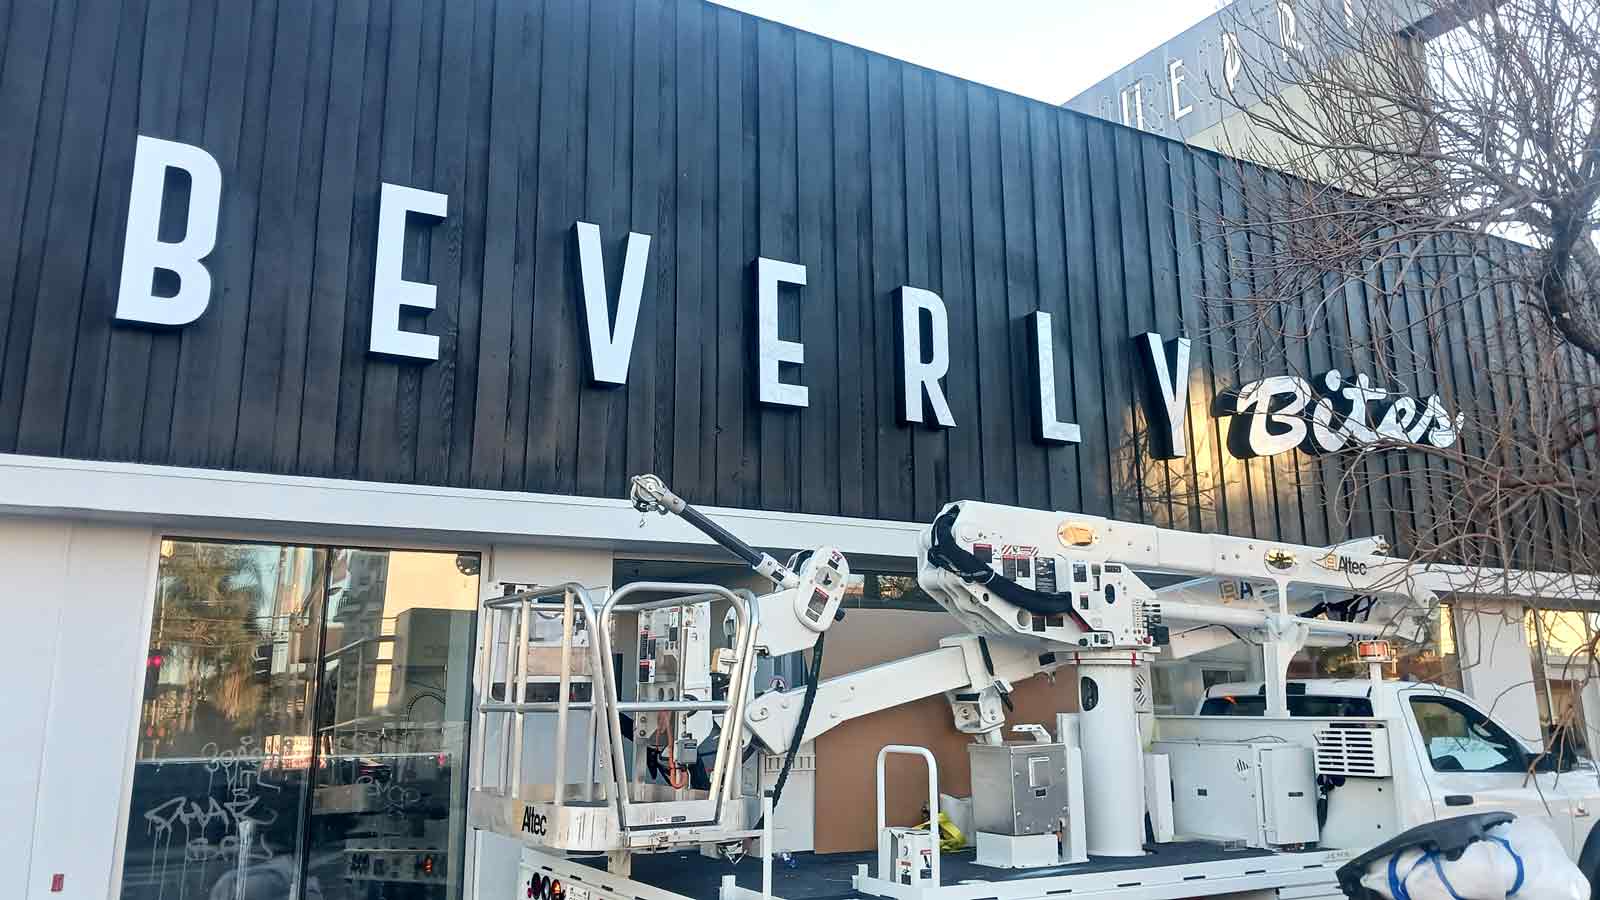 beverly bites 3d letter truck installation